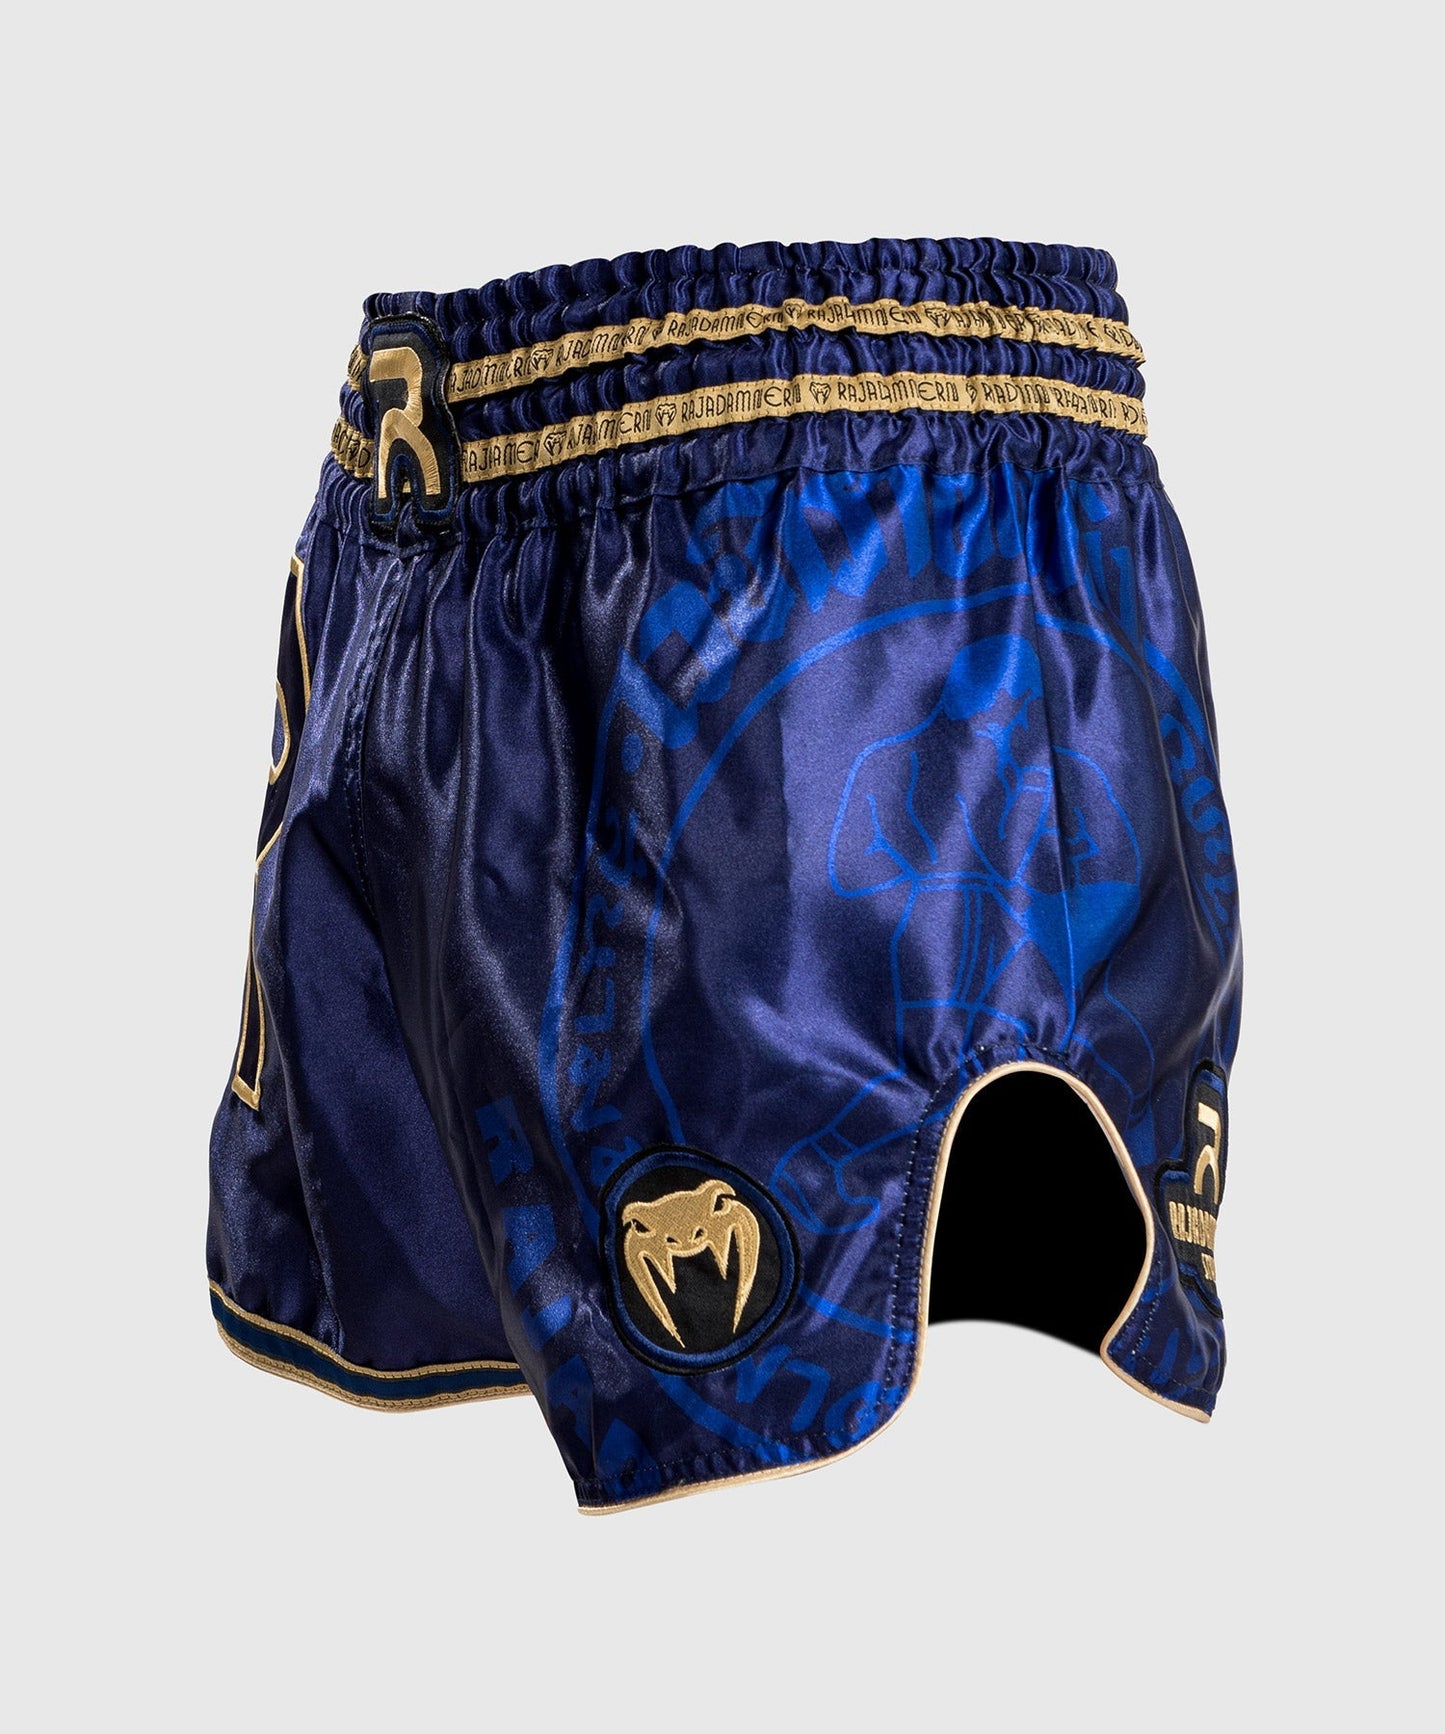 Venum RAJADAMNERN Muay Thai Shorts - Blau